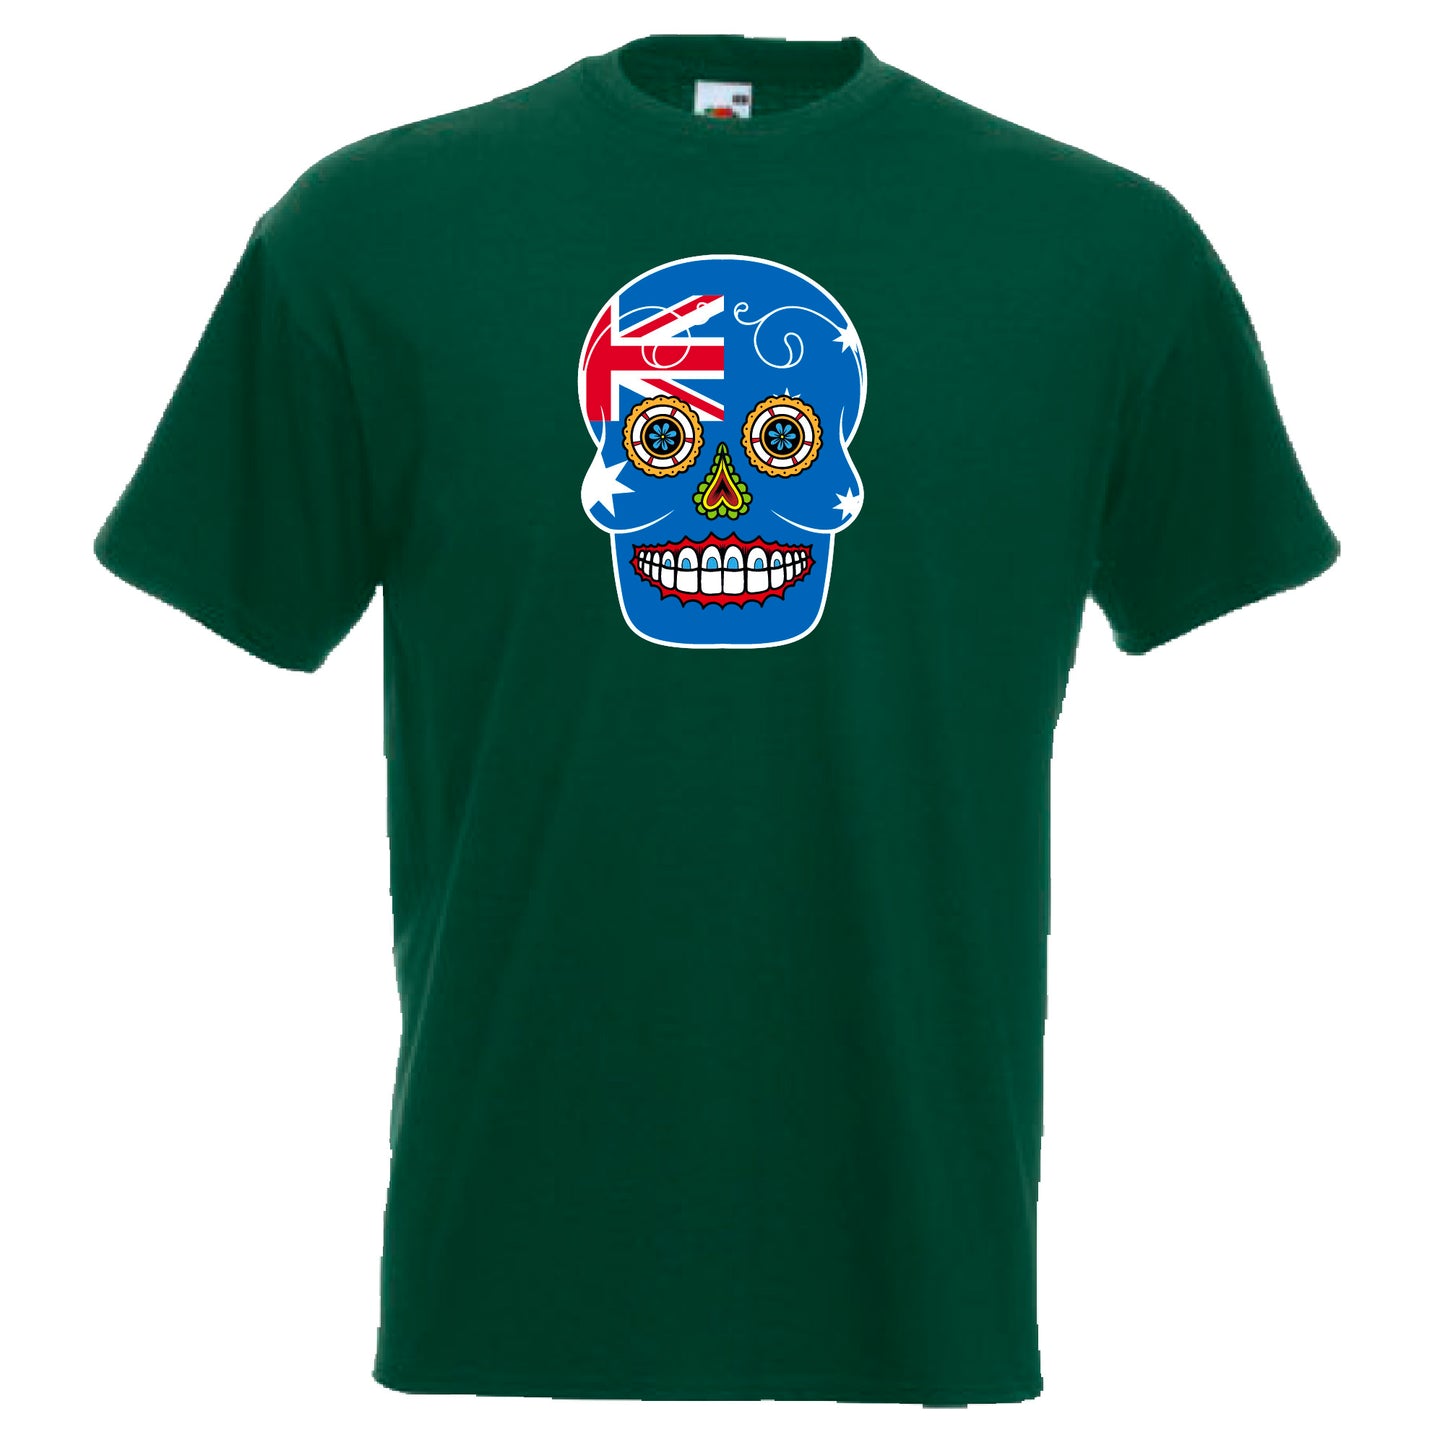 INDIGOS UG - T-Shirt Herren - Australien - Skull - Fussball